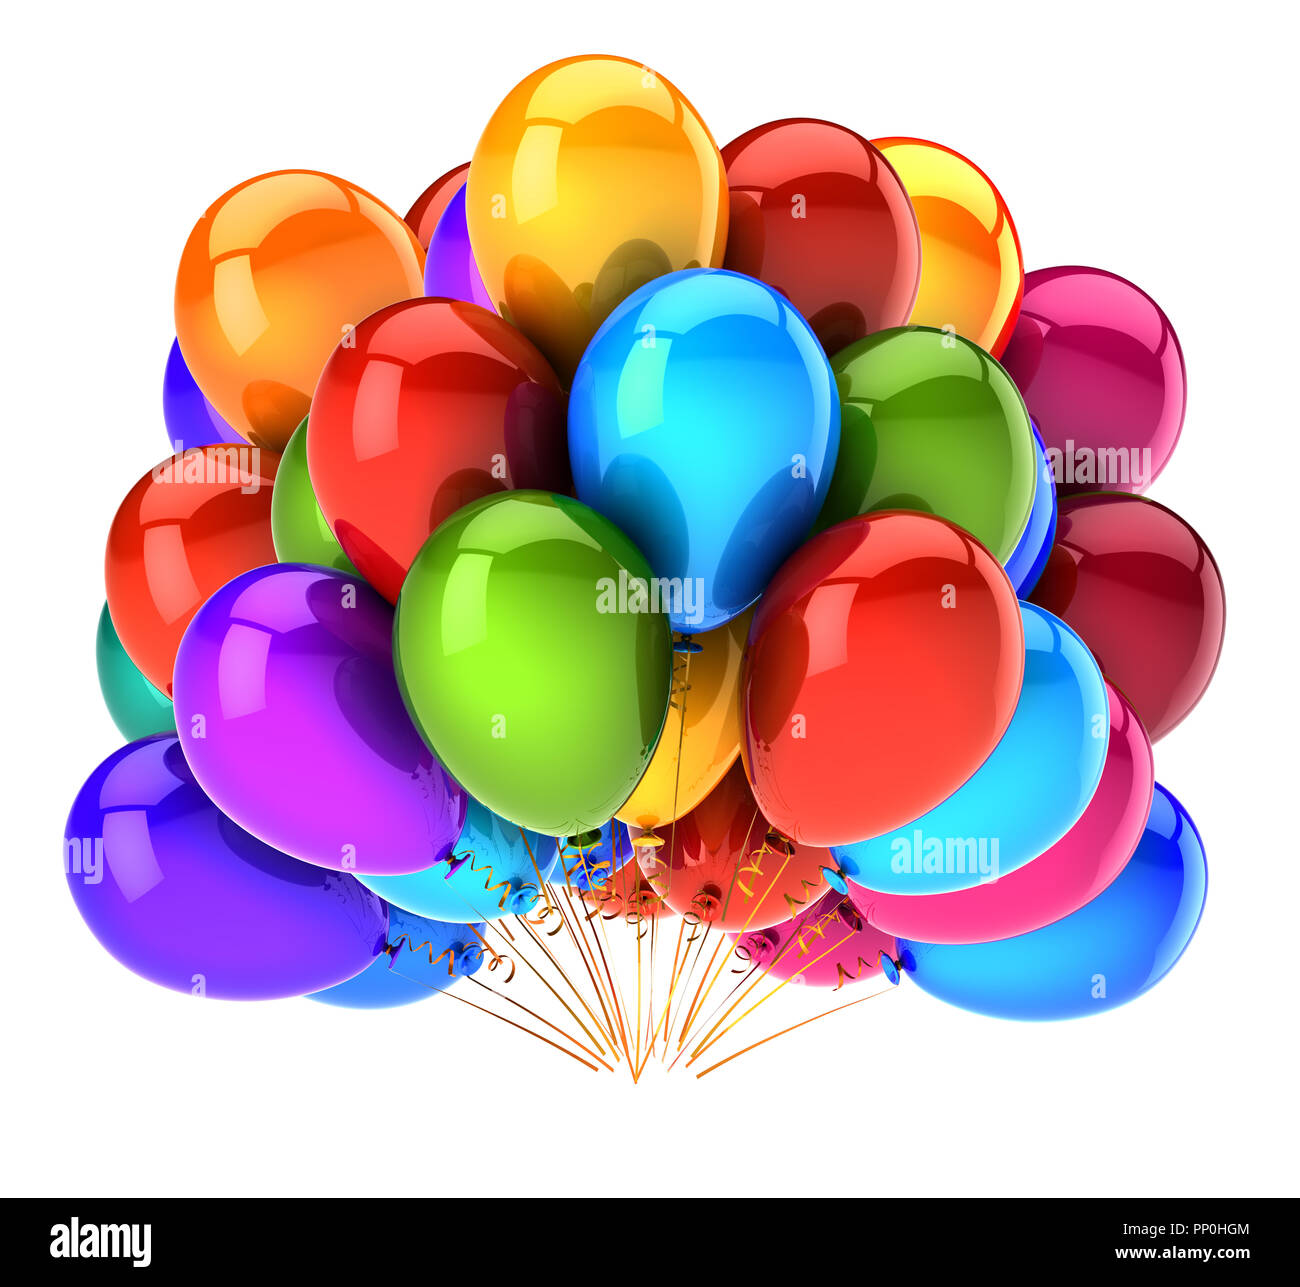 Illustration 3d Partie De La Decoration De Ballons Joyeux Anniversaire Multicolore Ballon Helium Colore Bouquet Anniversaire Symbole De Vacances Heureux Photo Stock Alamy